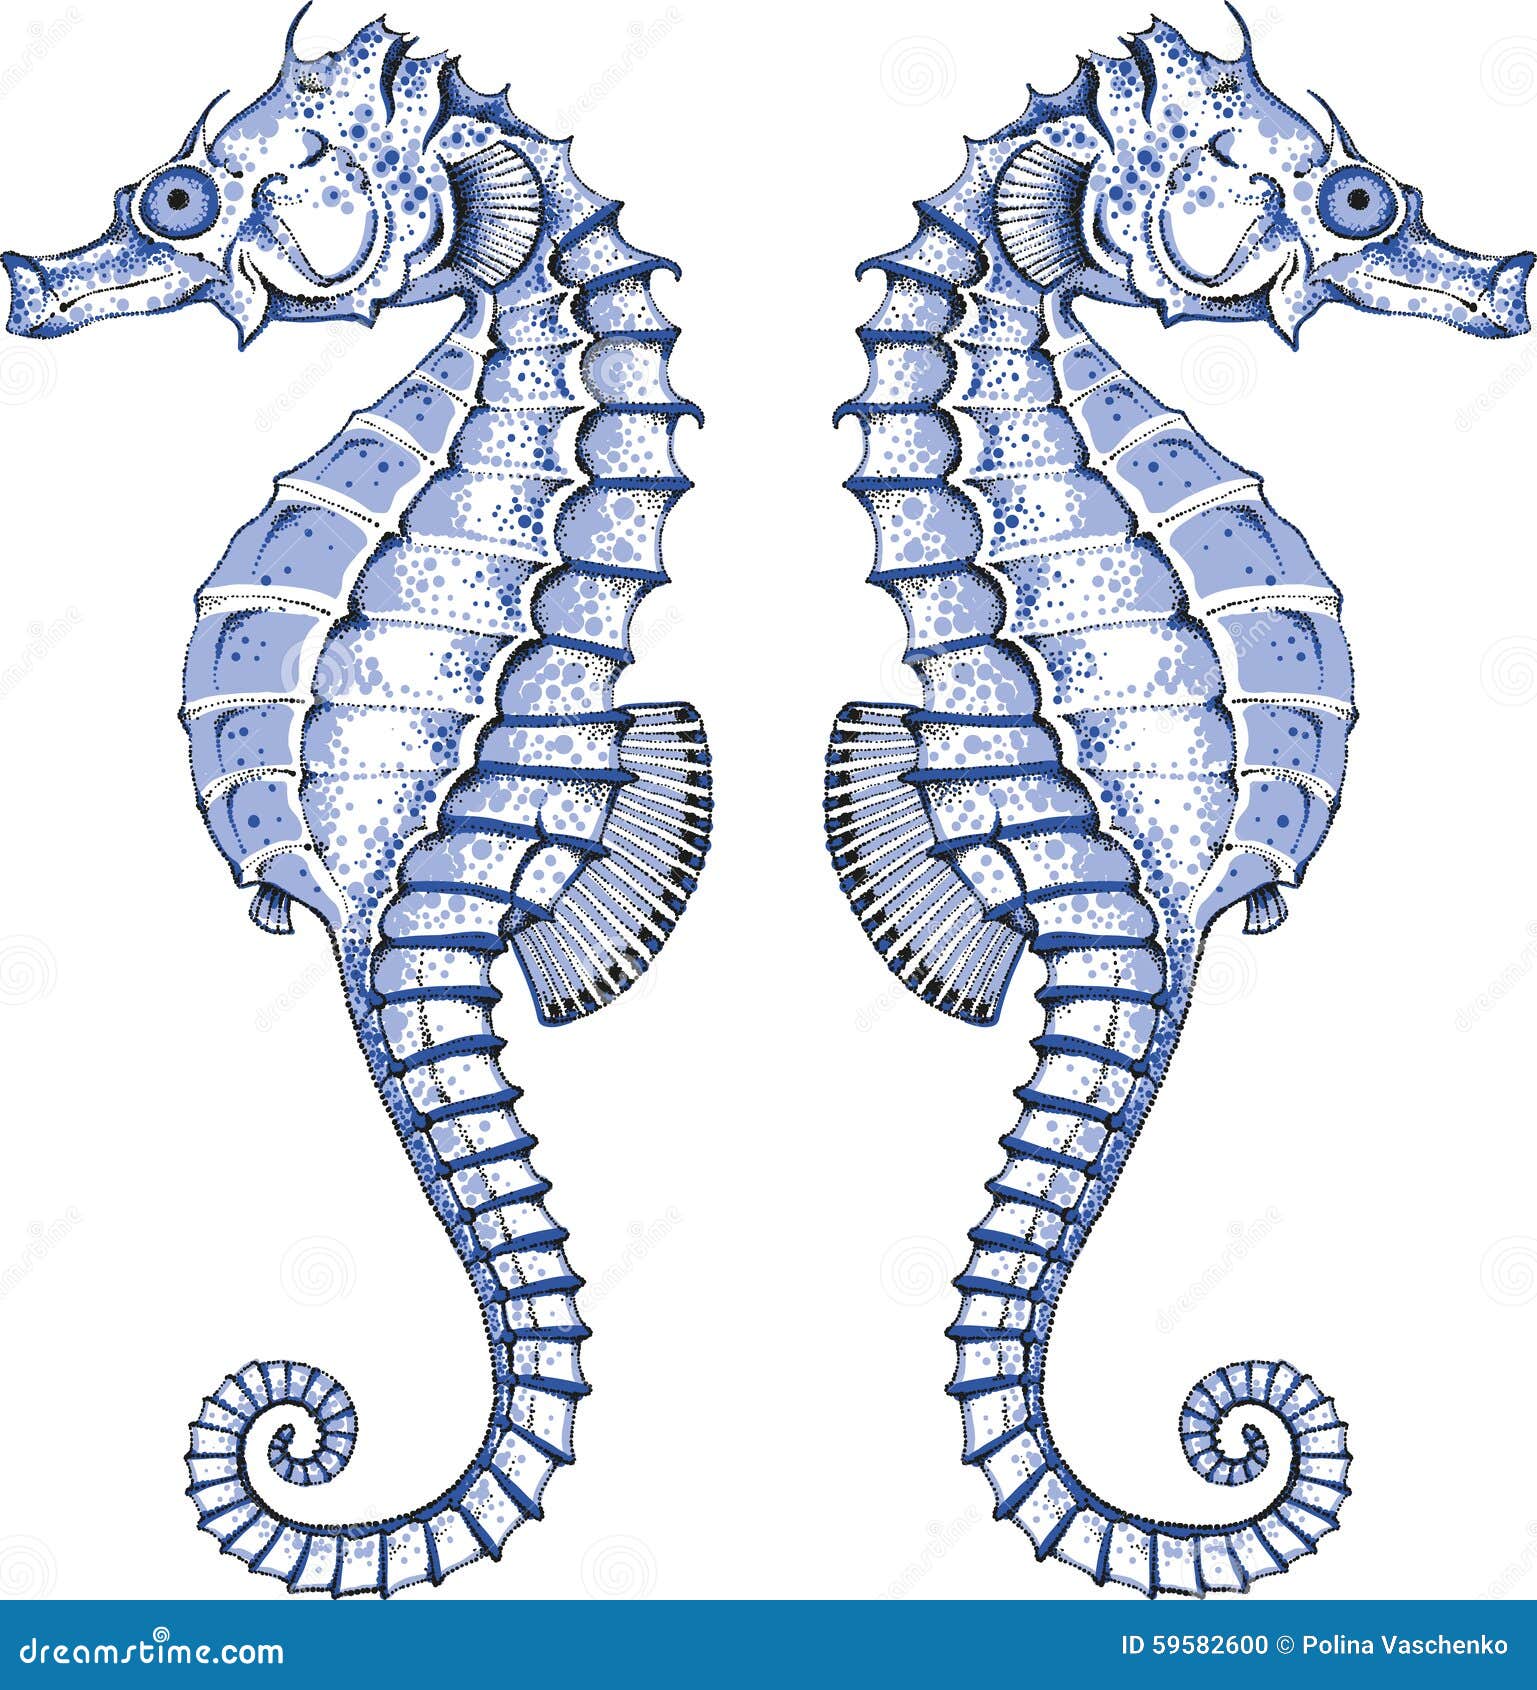 graphic seahorse